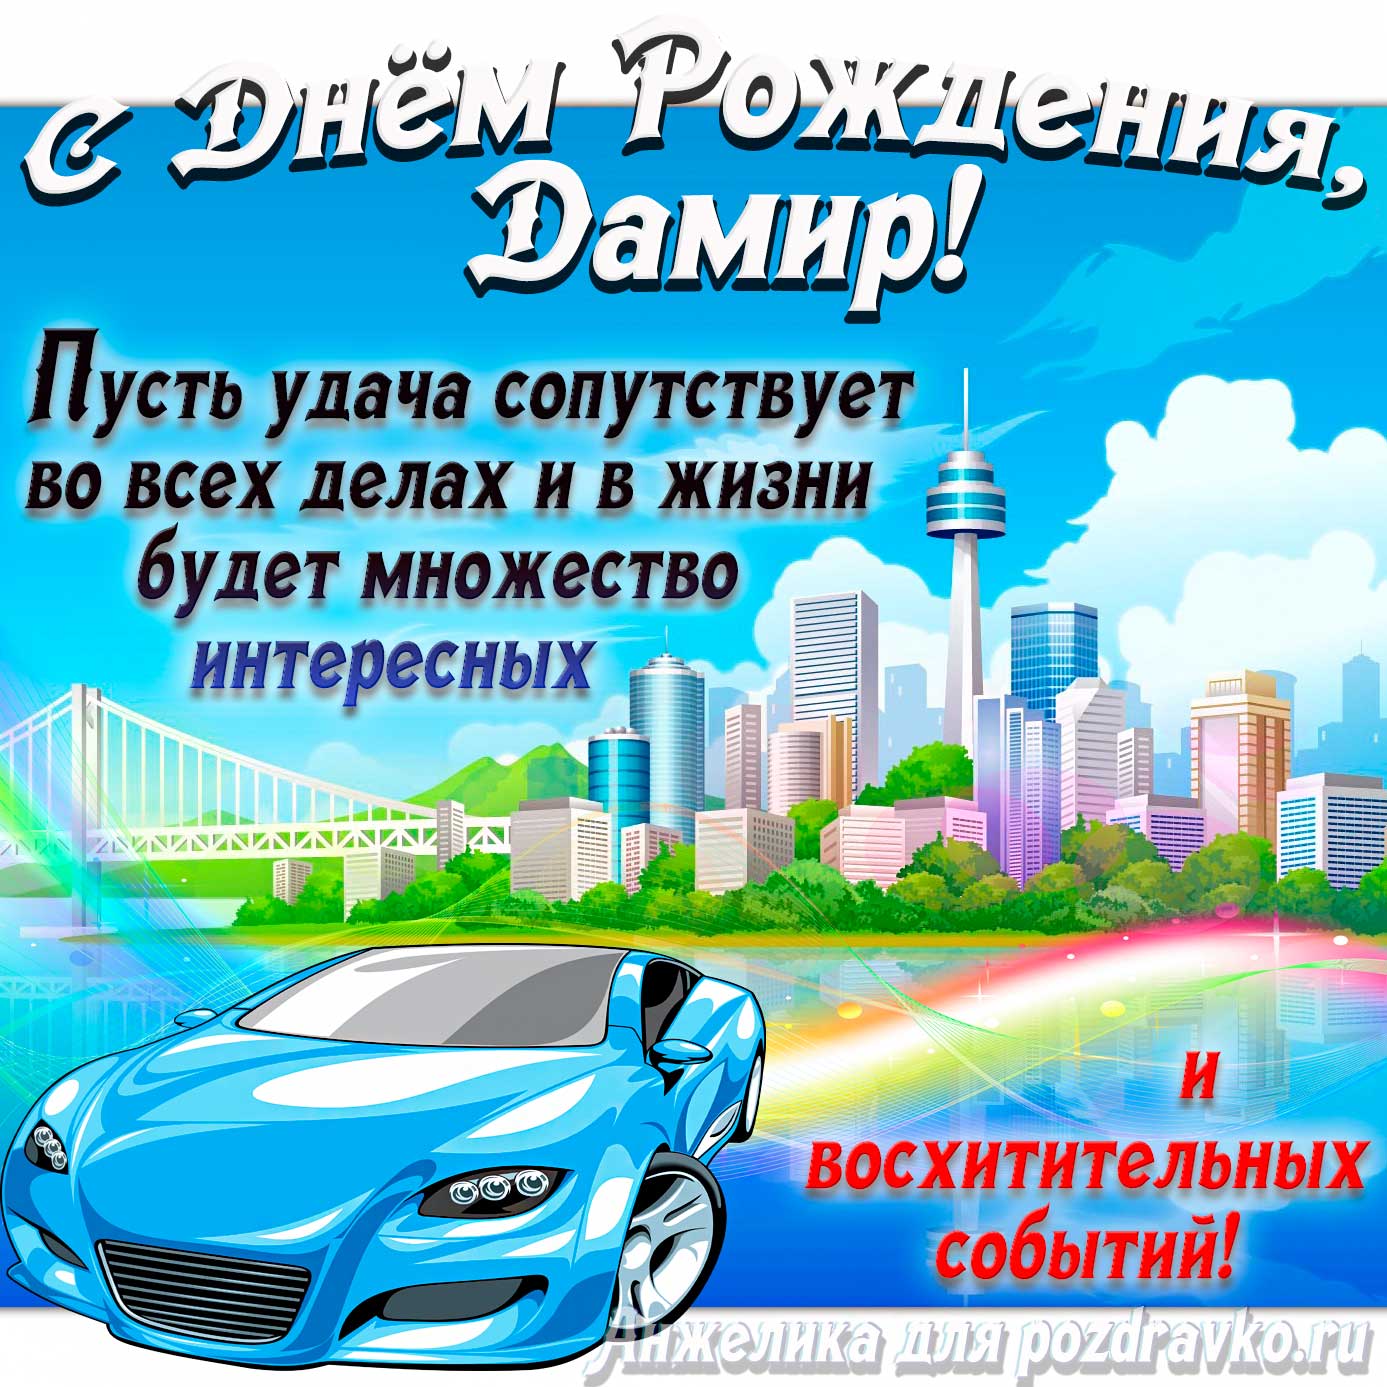 Открытка - с Днём Рождения Дамир с голубой машиной и пожеланием. Скачать бесплатно или отправить картинку.